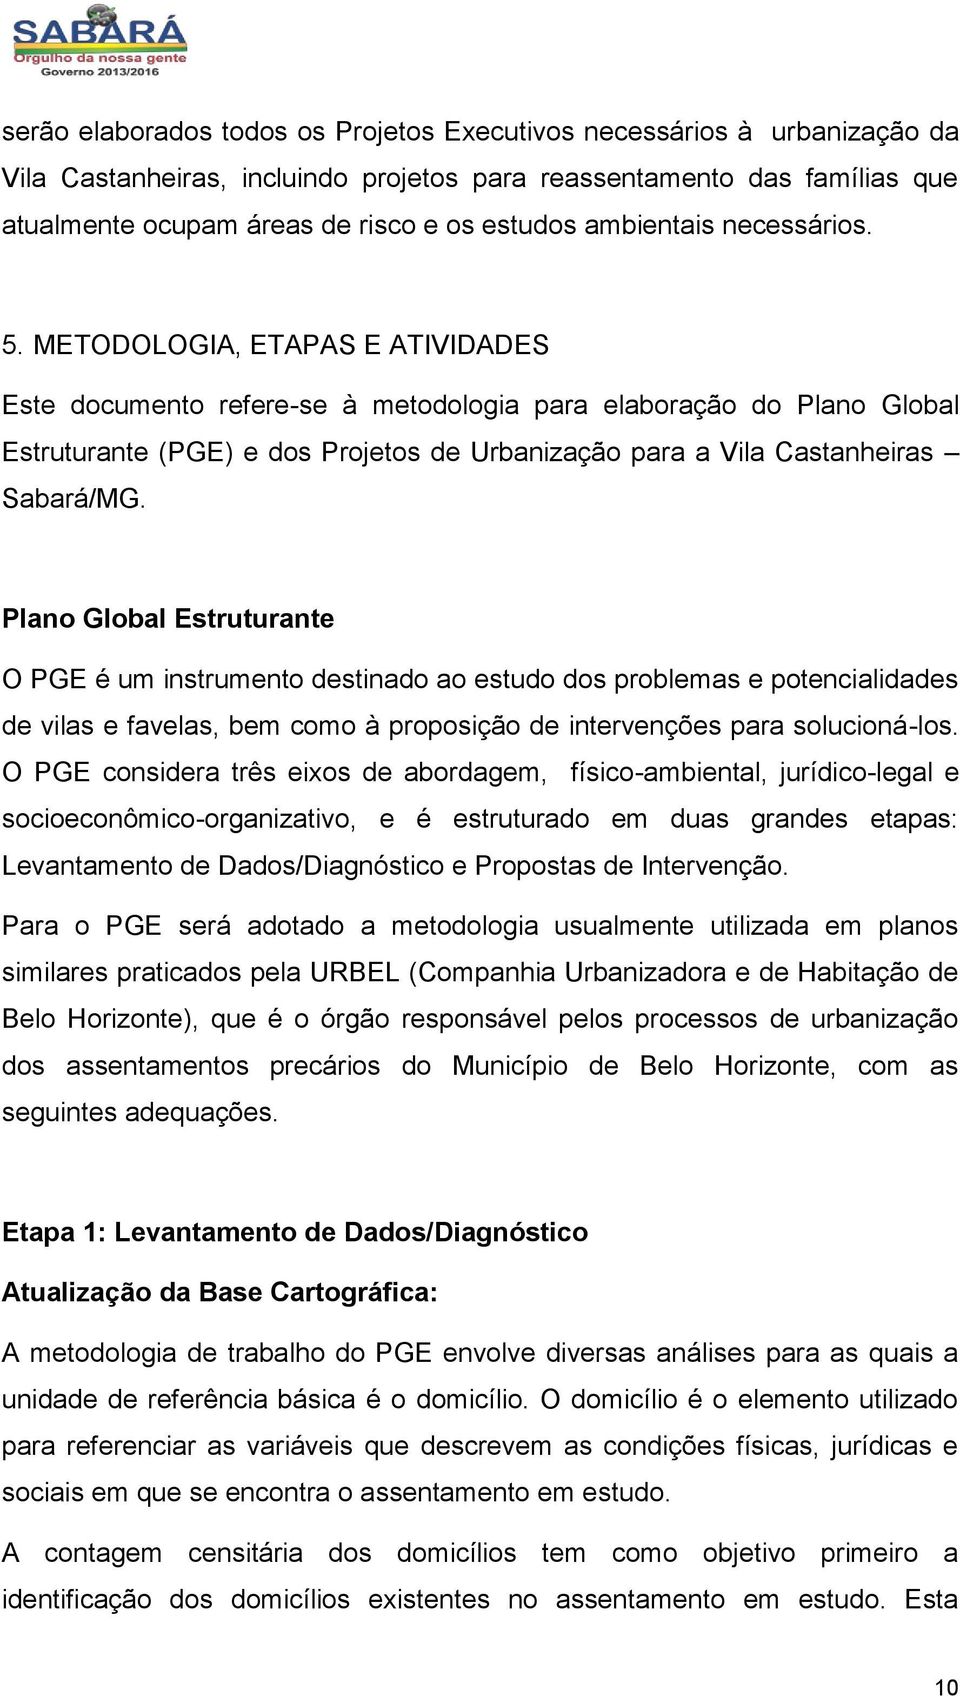 METODOLOGIA, ETAPAS E ATIVIDADES Este documento refere-se à metodologia para elaboração do Plano Global Estruturante (PGE) e dos Projetos de Urbanização para a Vila Castanheiras Sabará/MG.